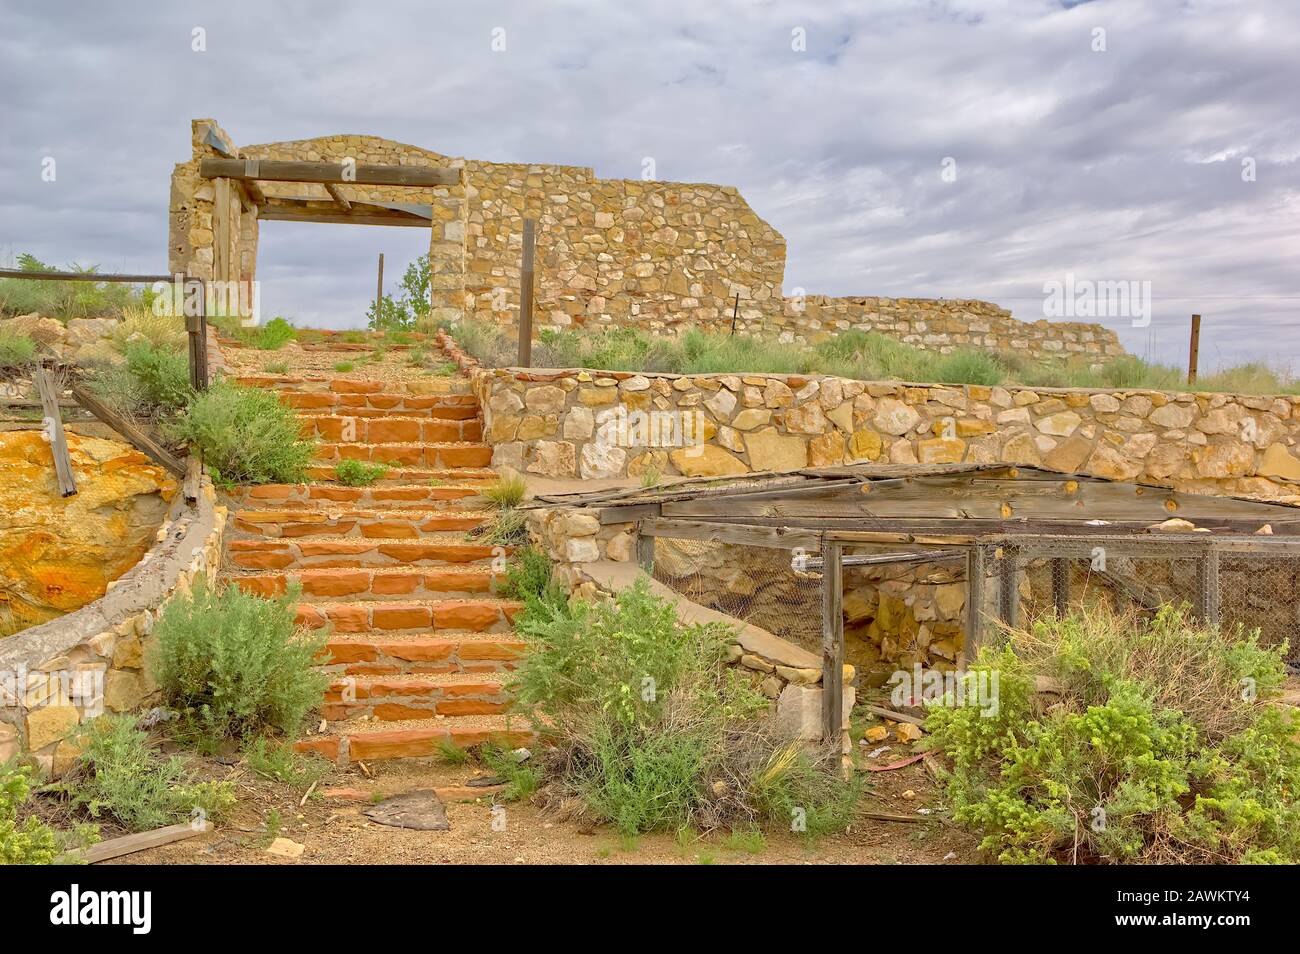 Die Treppe eines verlassenen Handelspostens entlang der alten Route 66 in Arizona, die als Zwei Waffen bekannt ist. Bevor die Siedlung zu Zwei Gewehren wurde, war es ursprünglich Stockfoto